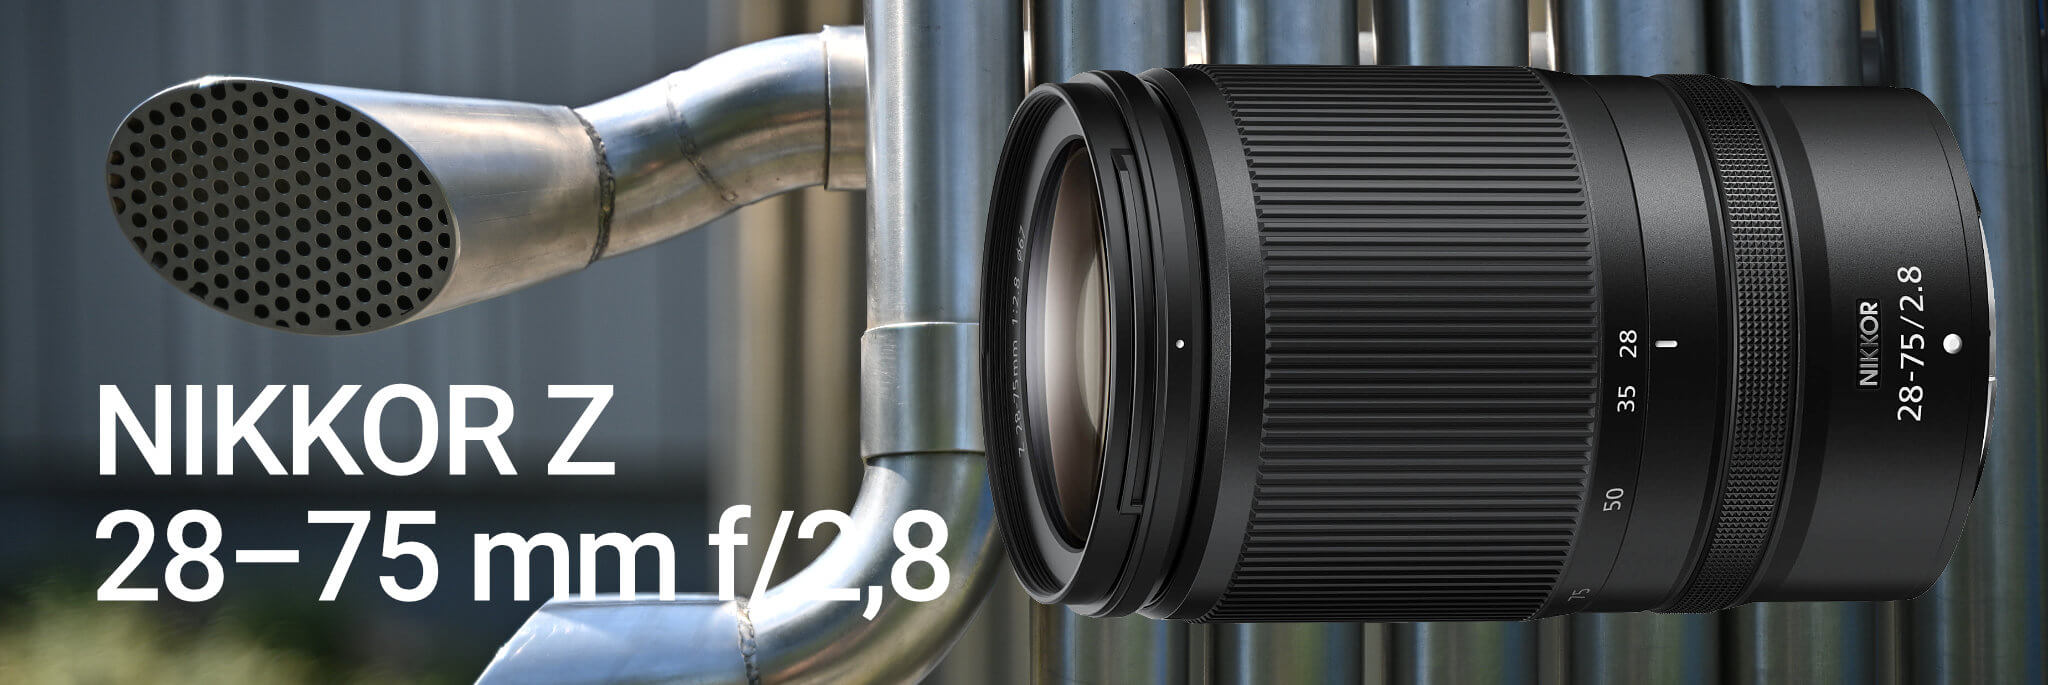 NIKKOR Z 28–75 mm f/2,8 – dostupný světelný zoom v testu Nikonblogu